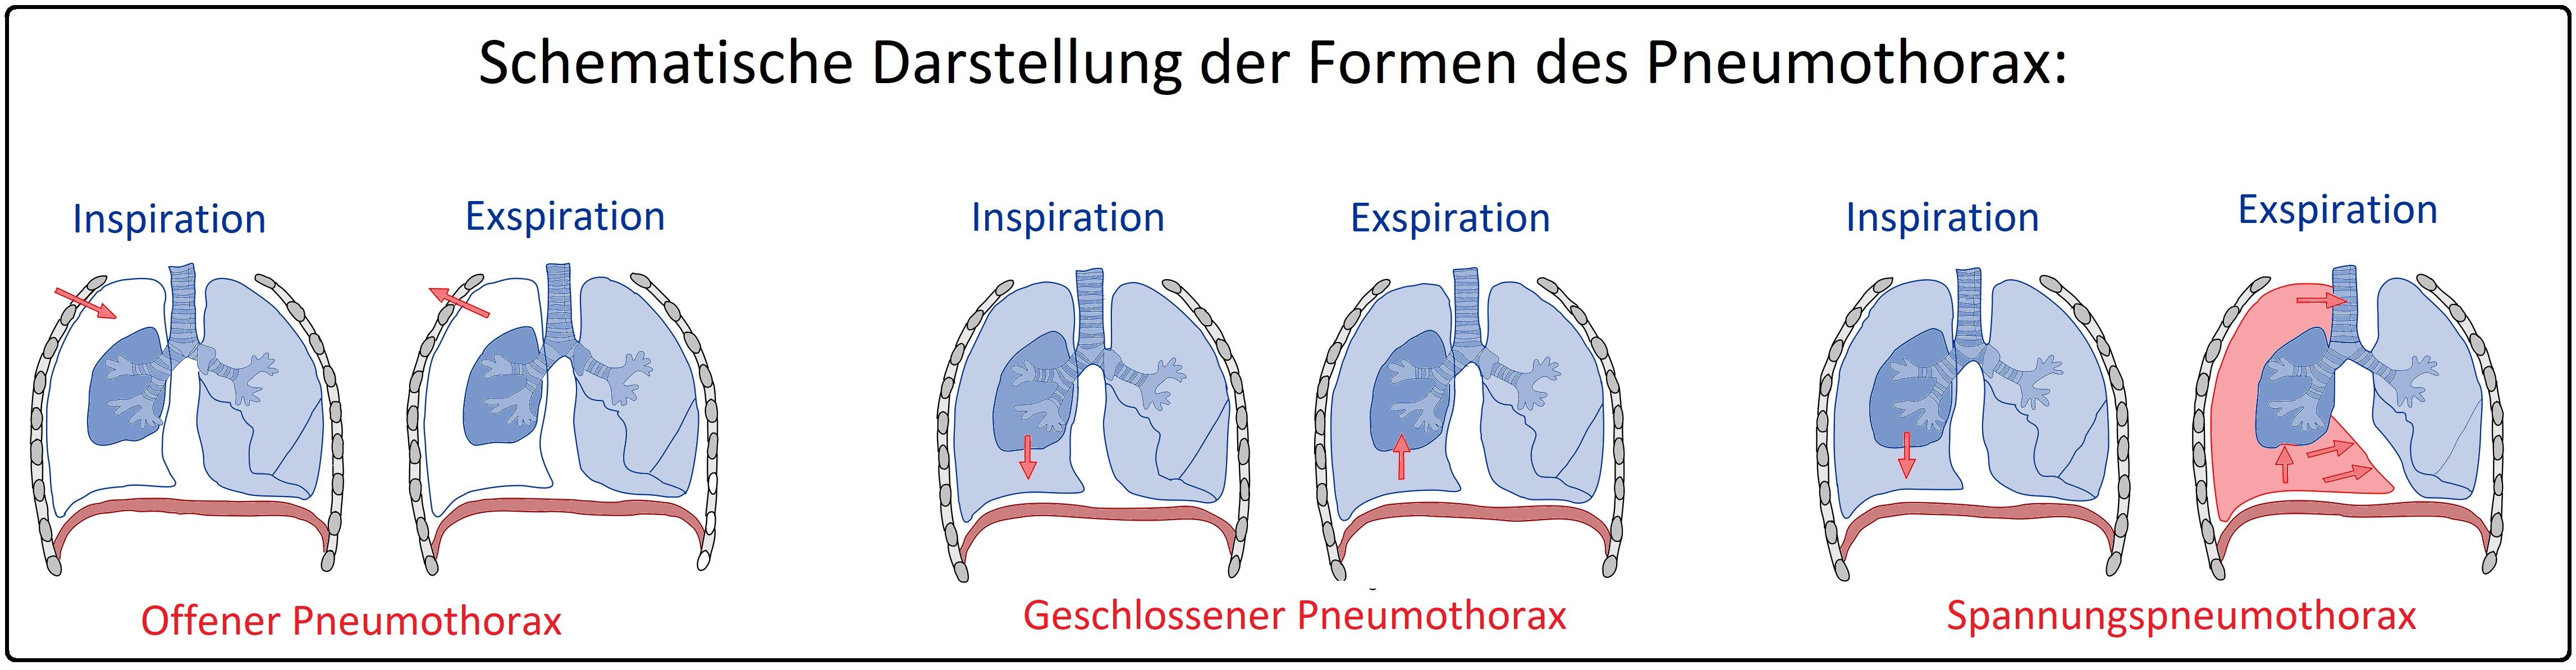 690 Schematische Darstellung der Formen des Pneumothorax